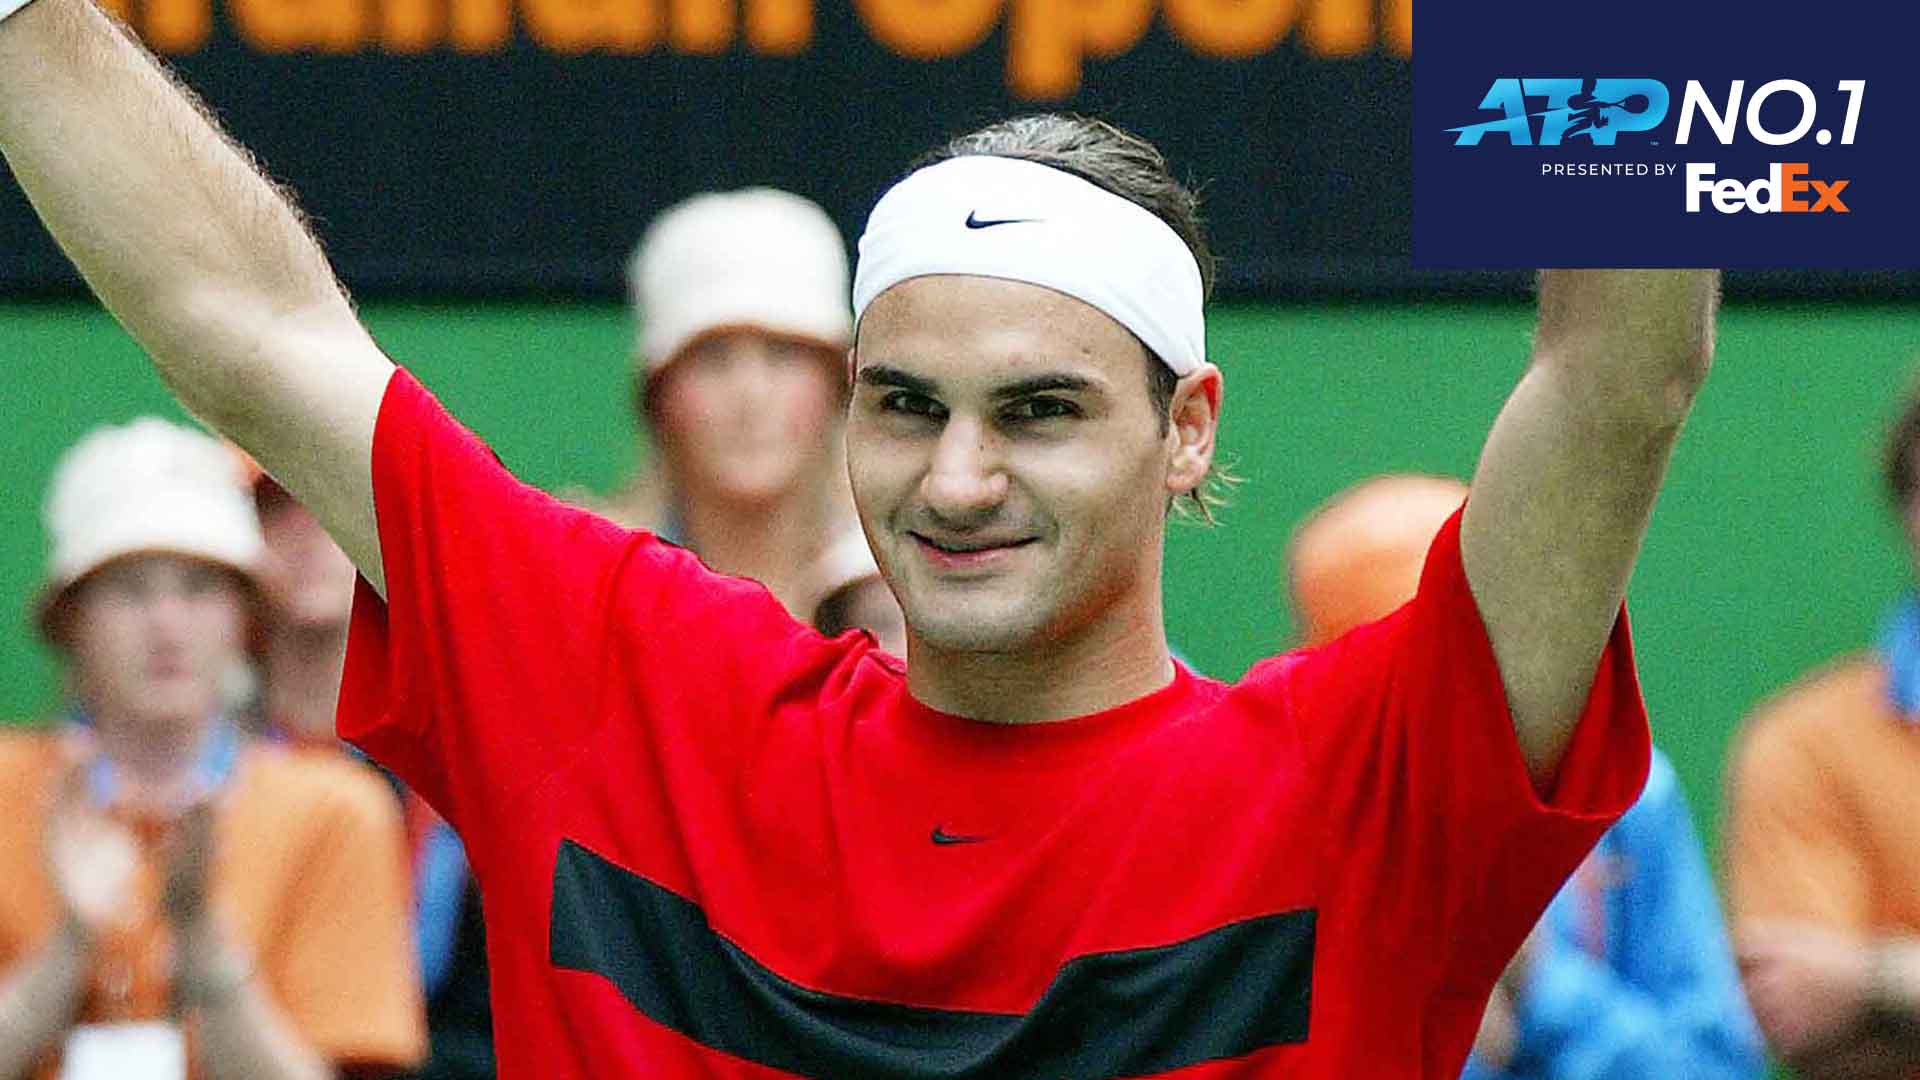 Roger Federer ascendió al No. 1 del mundo en el FedEx ATP Rankings por primera vez después de ganar su primer trofeo del Abierto de Australia en 2004.